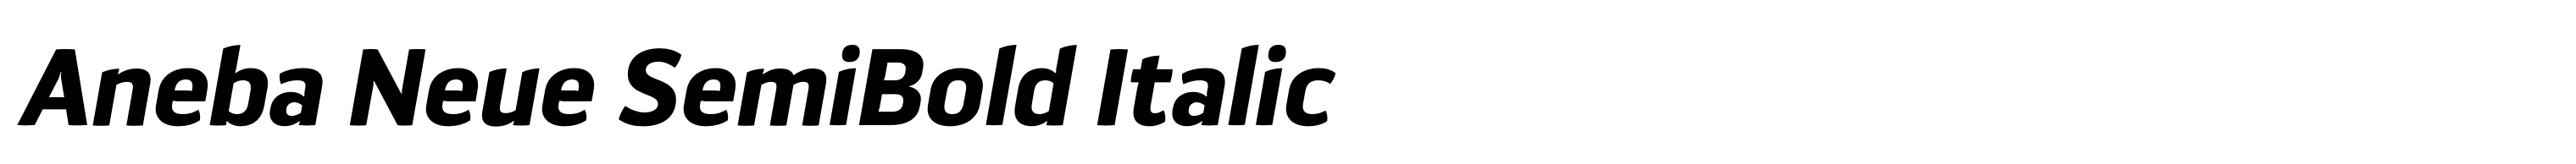 Aneba Neue SemiBold Italic